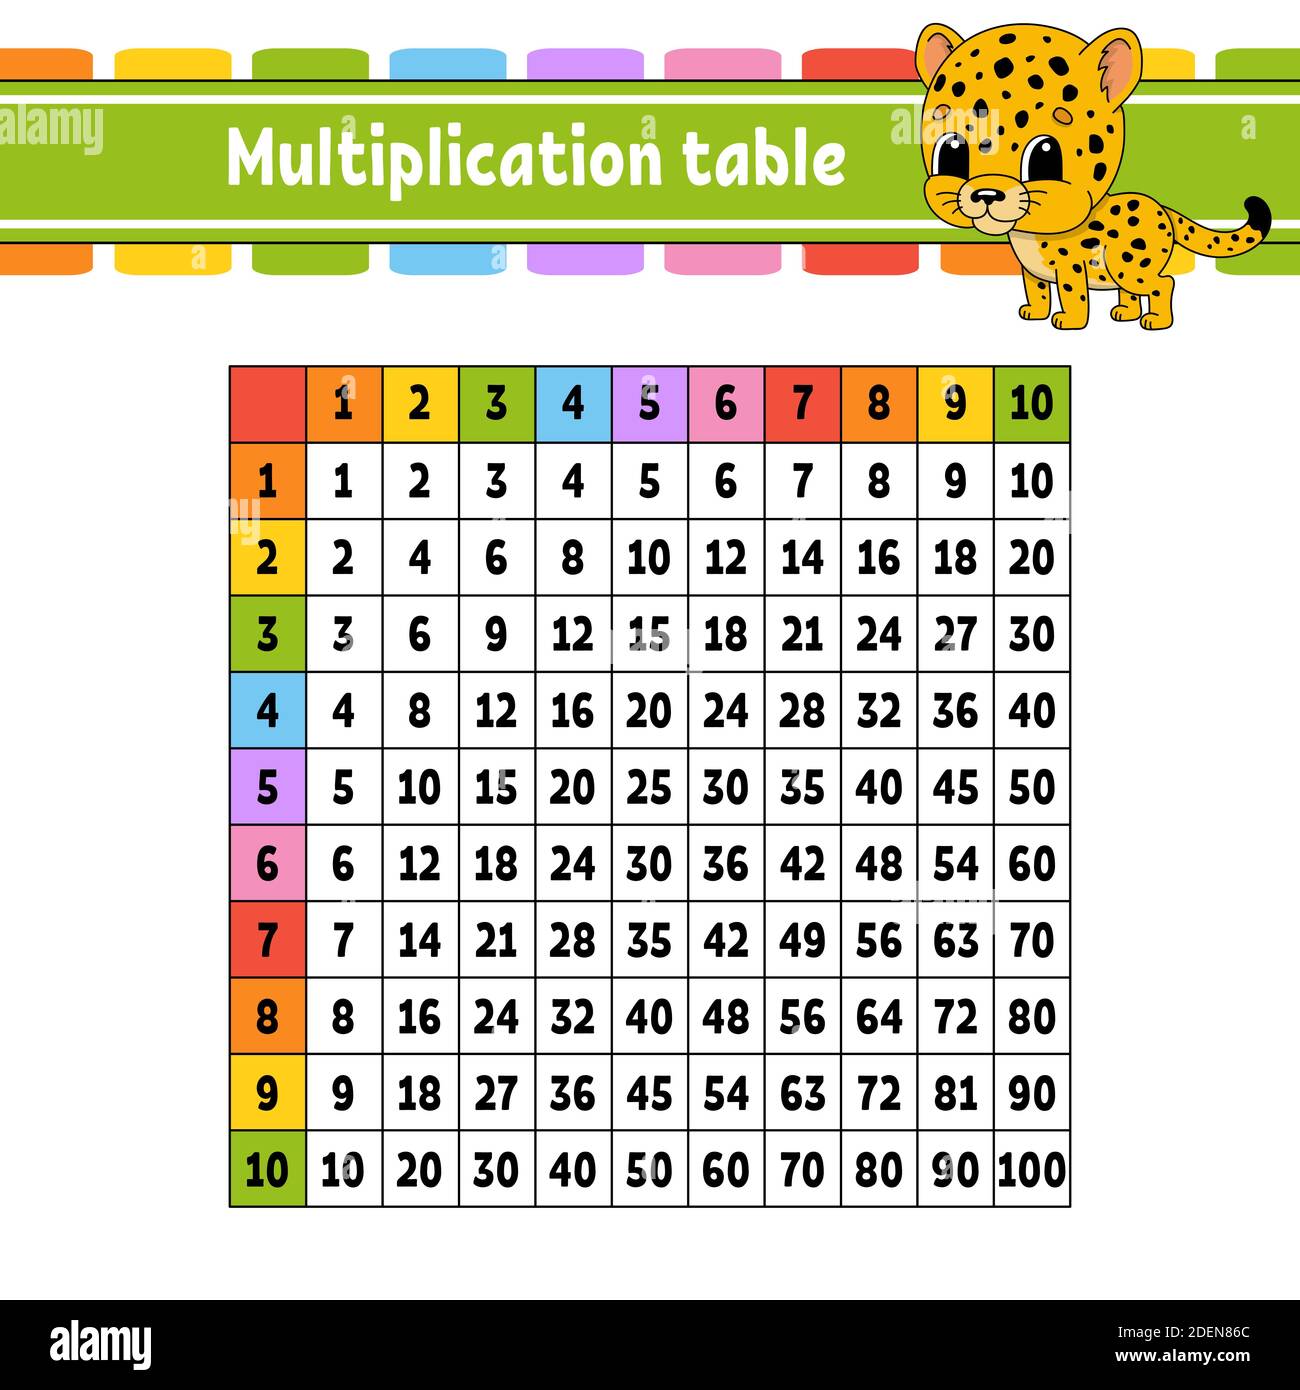 Multiplication table hi